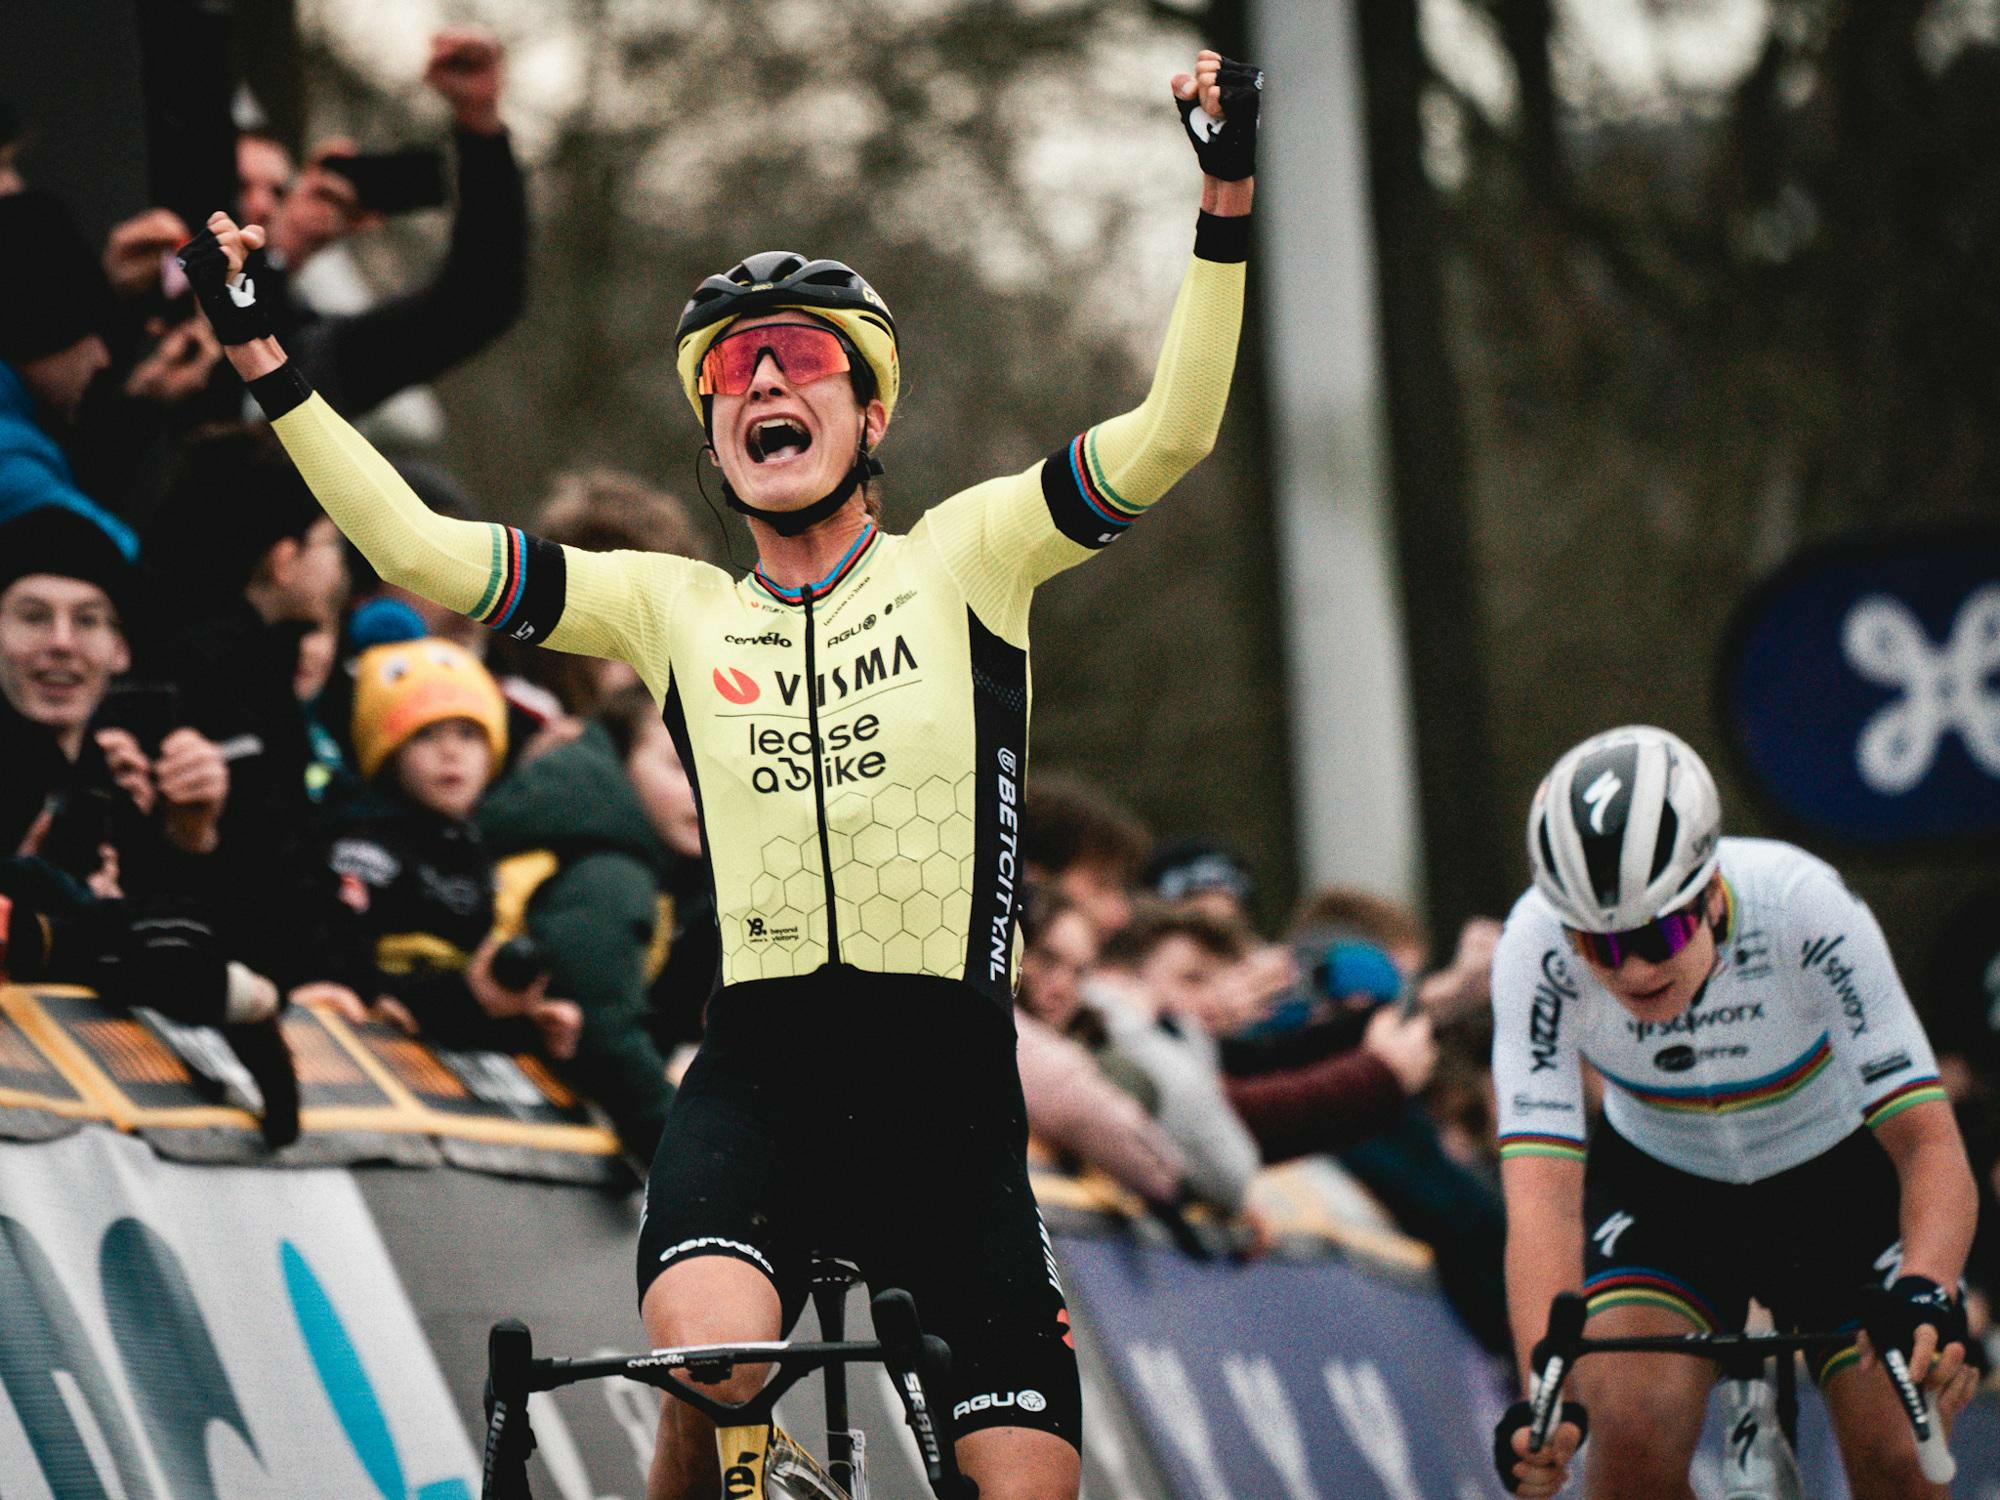 Vos remporte son premier Circuit le Nieuwsblad au sprint